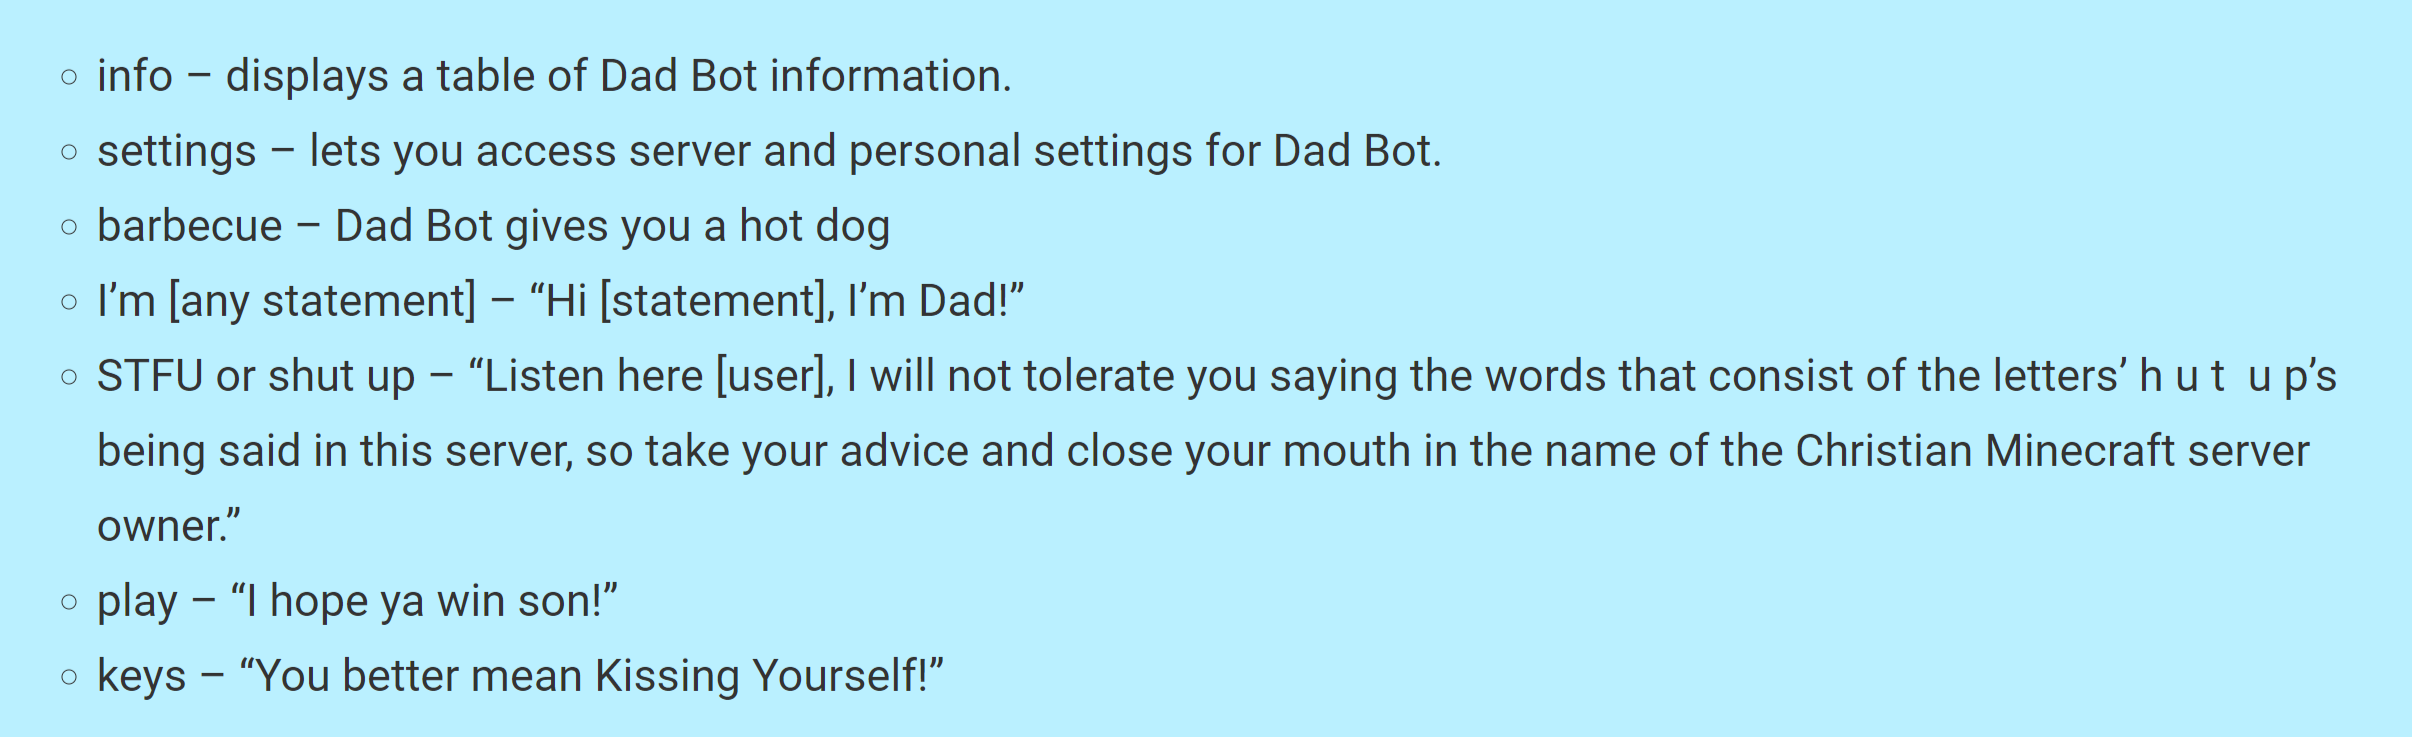 dad commands